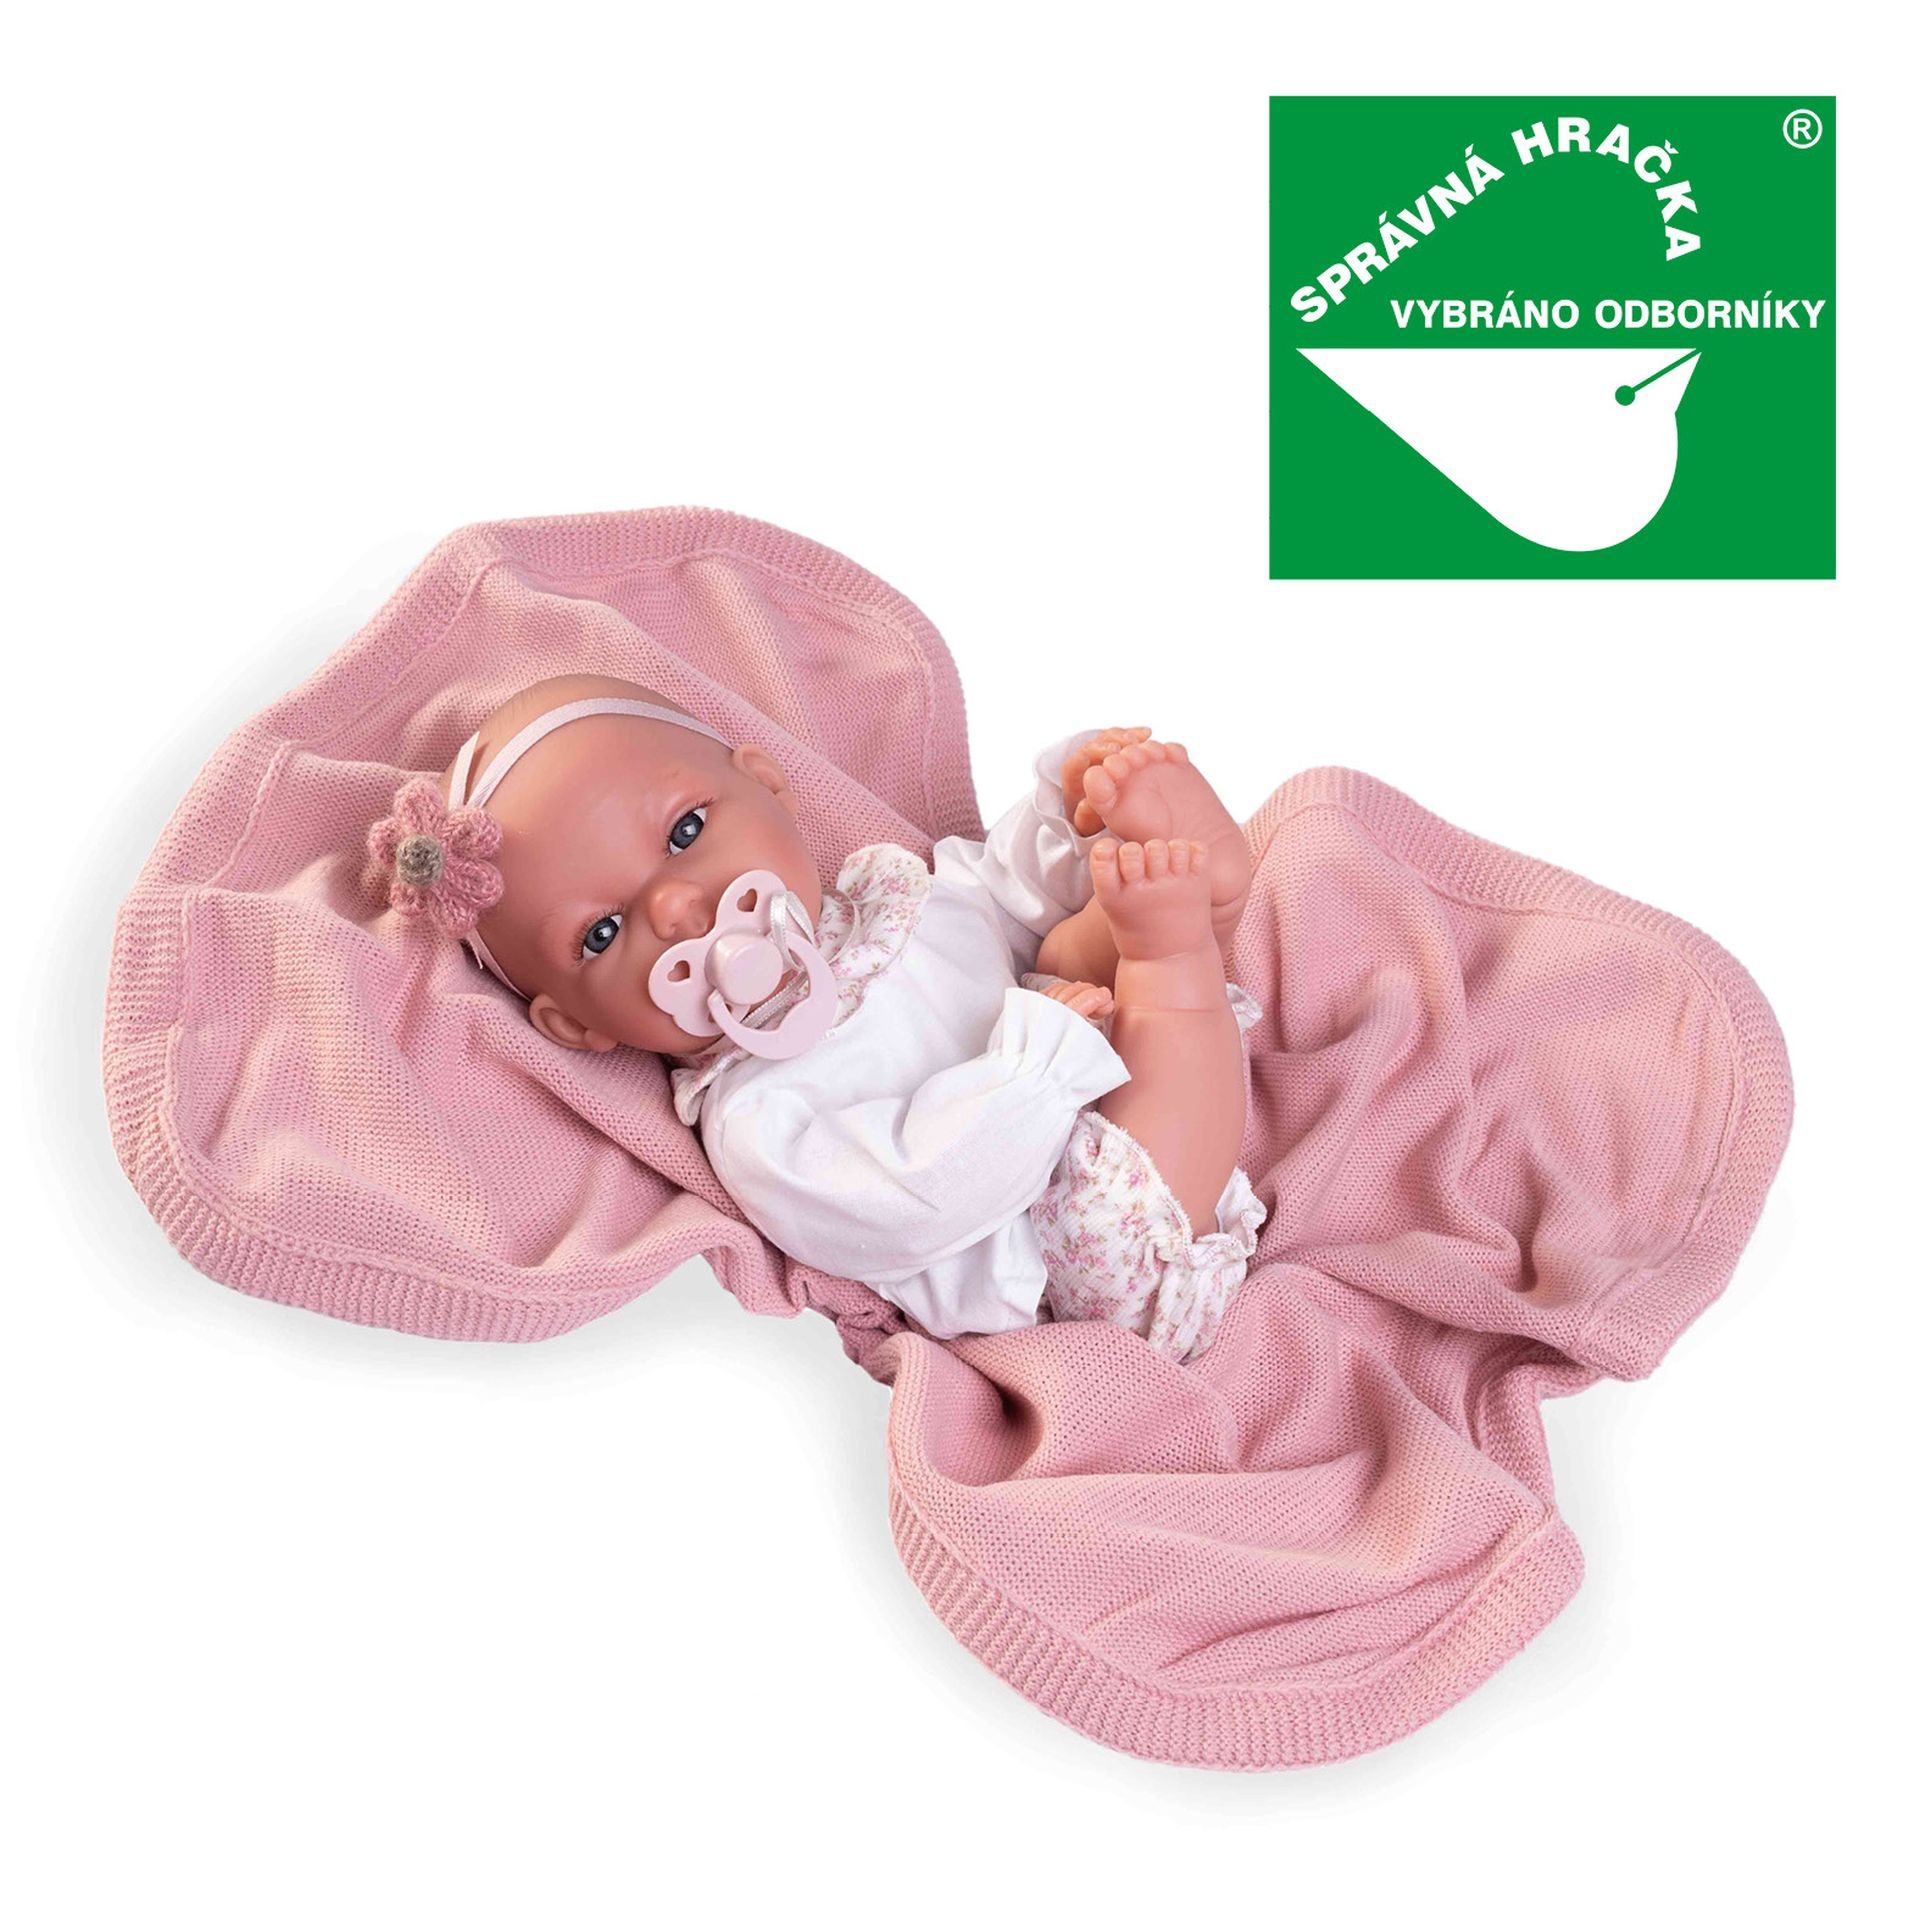 Levně Antonio Juan 70358 TONETA - realistická panenka miminko se speciální pohybovou funkcí a měkkým látkovým tělem - 34 cm